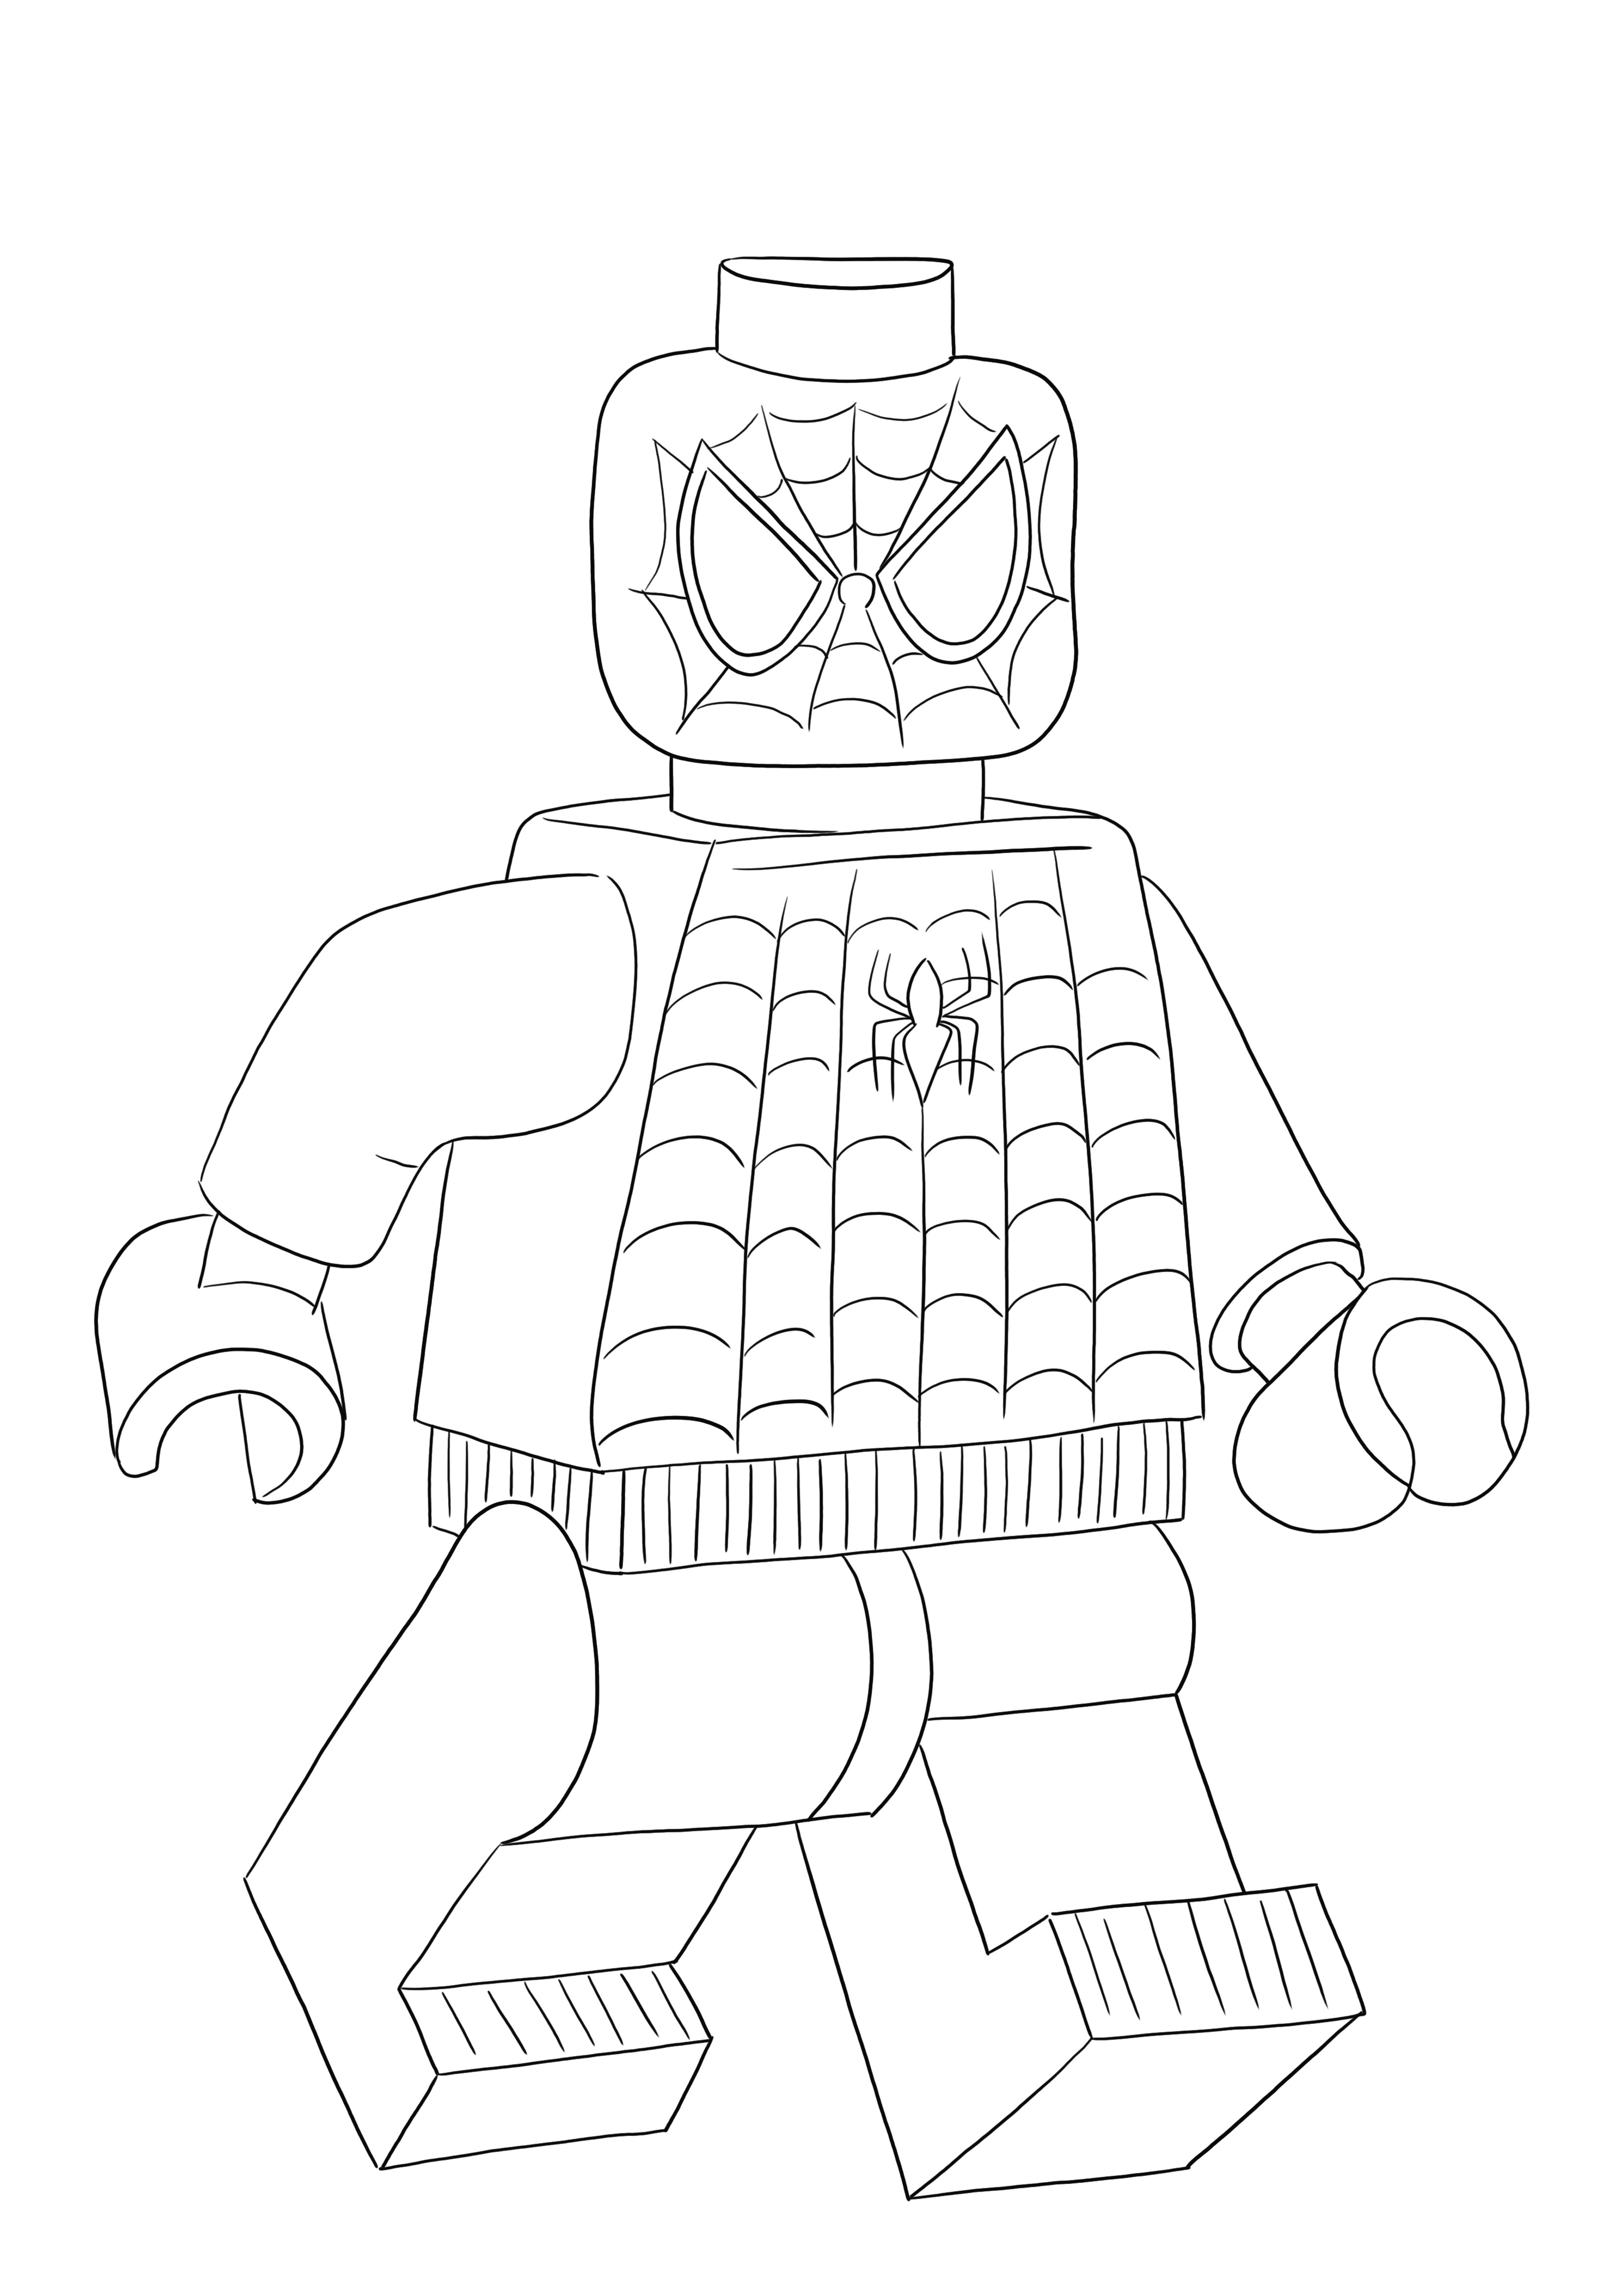 O brinde do Lego Spiderman está pronto para ser colorido e divertir todos os amantes de Lego